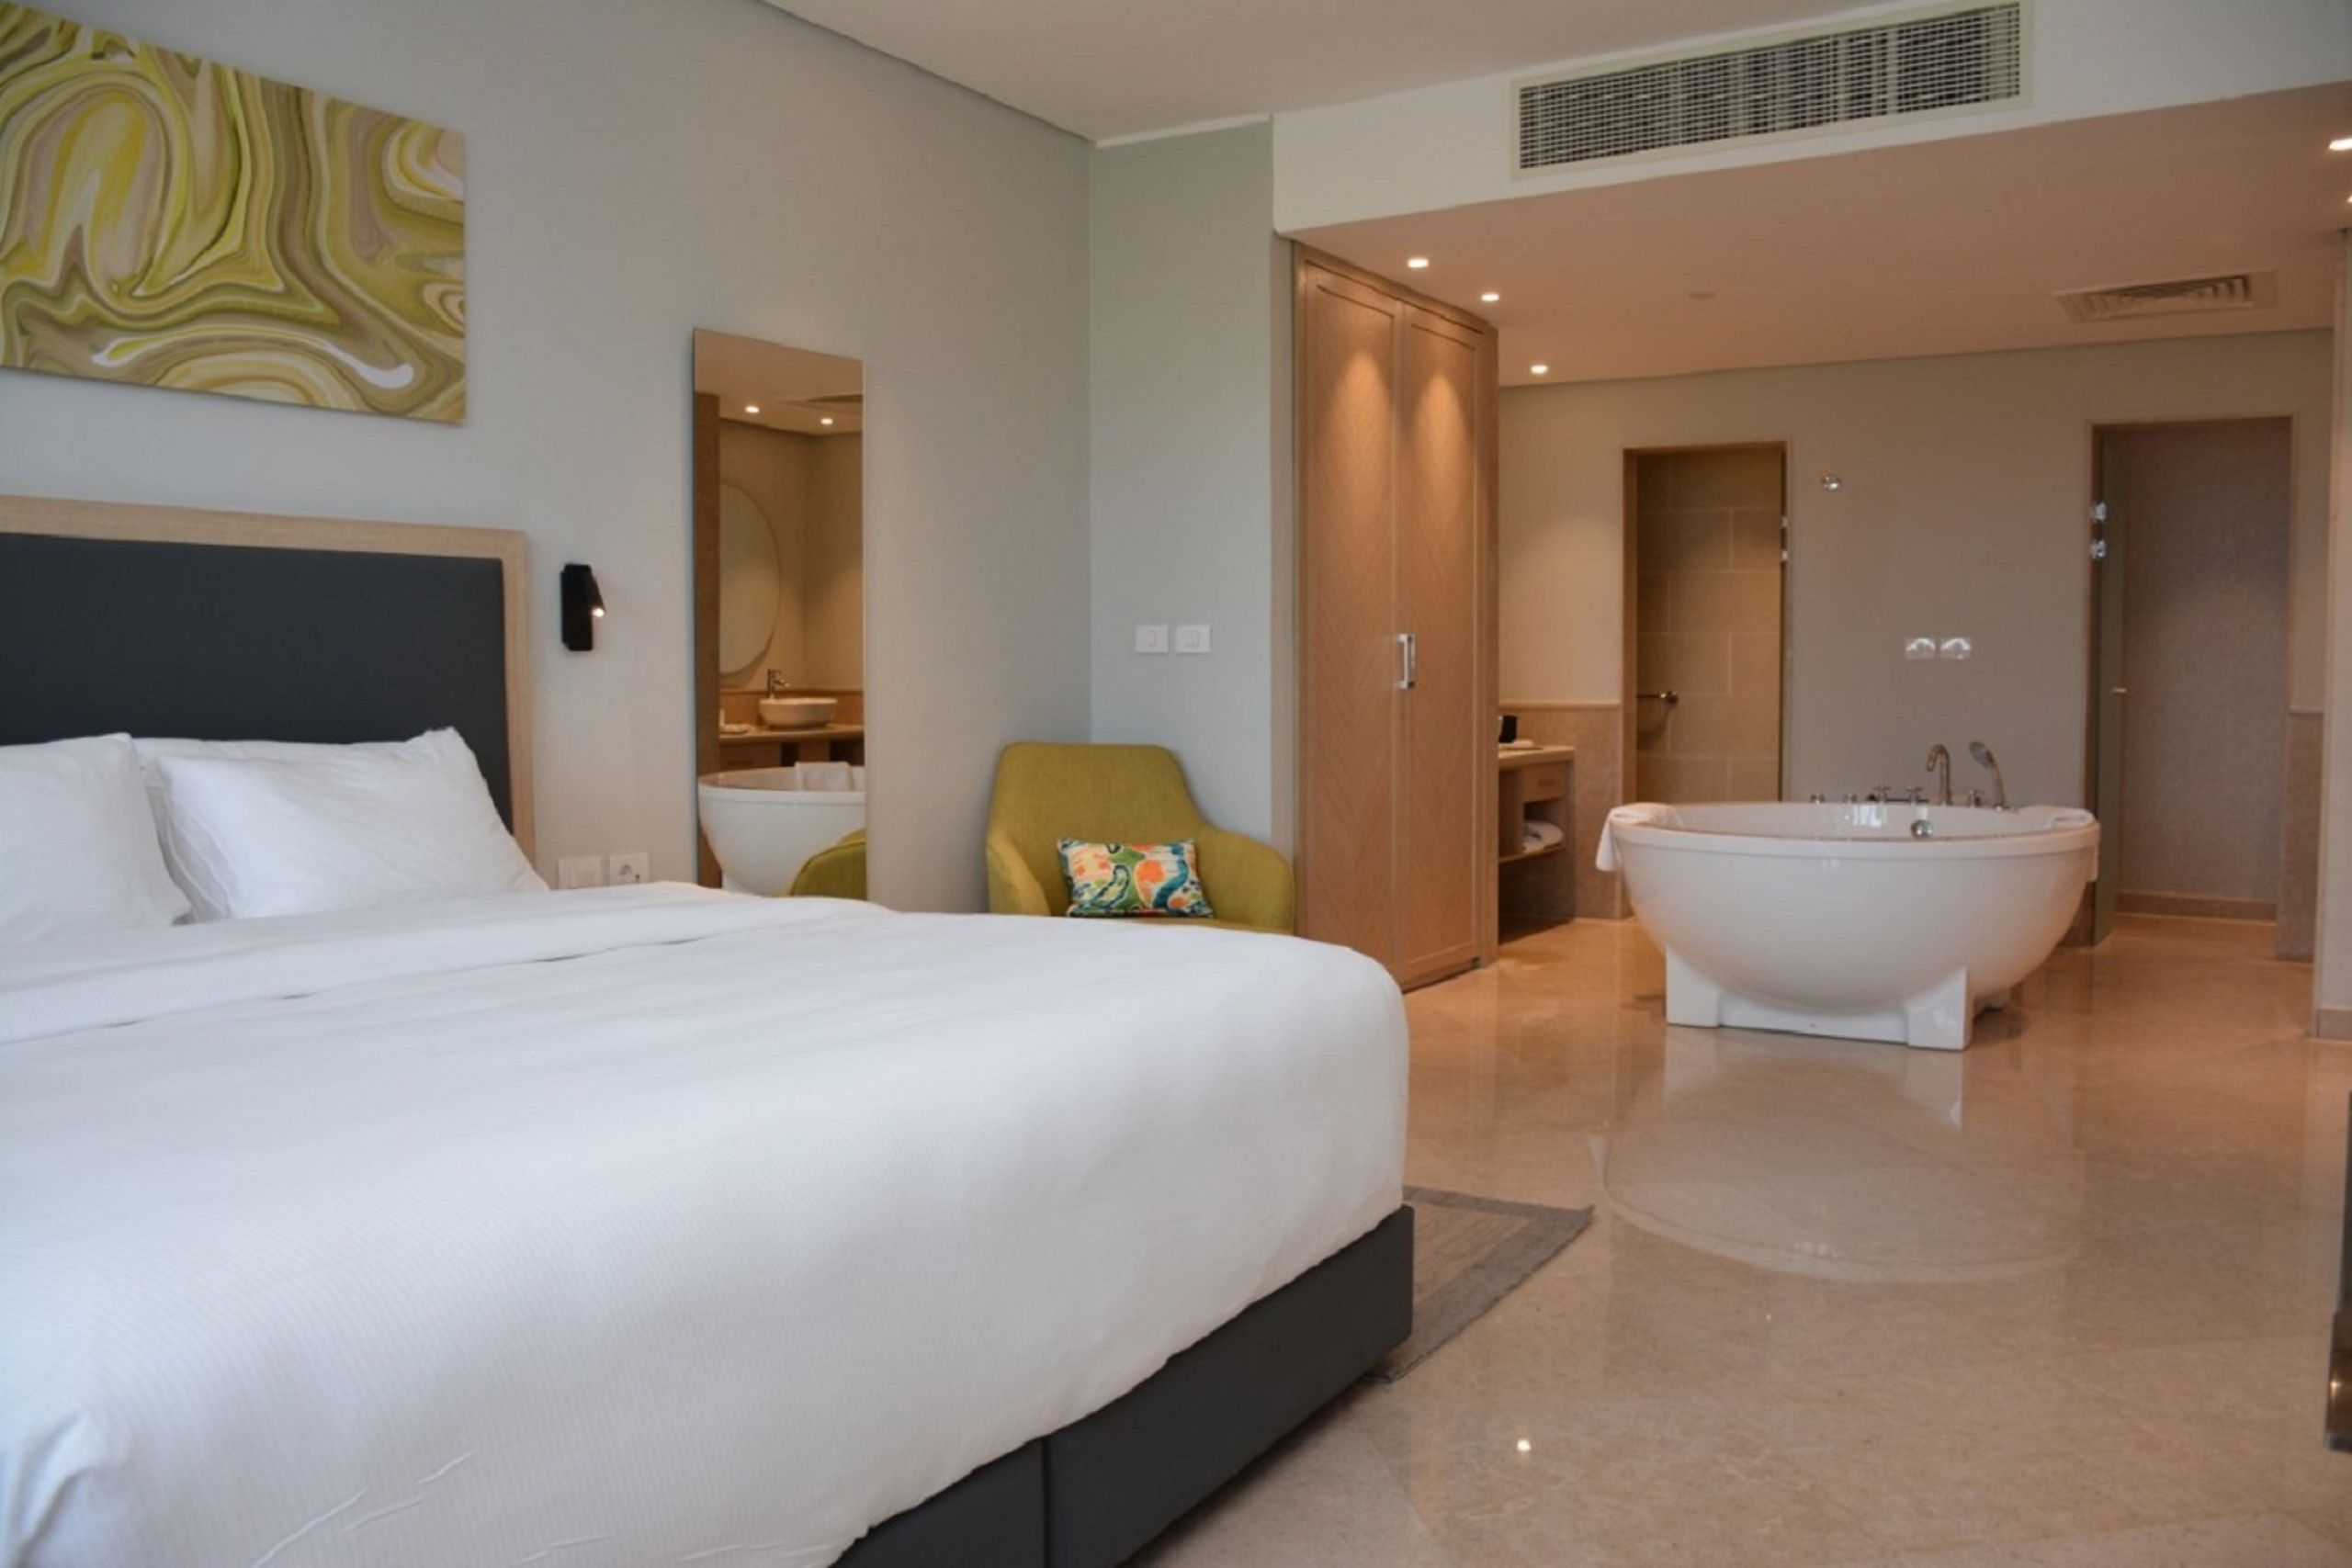 Steigenberger Aldau Beach Hotel - Hurghada - Egyiptom - A lakosztály - ágy és fürdőszoba